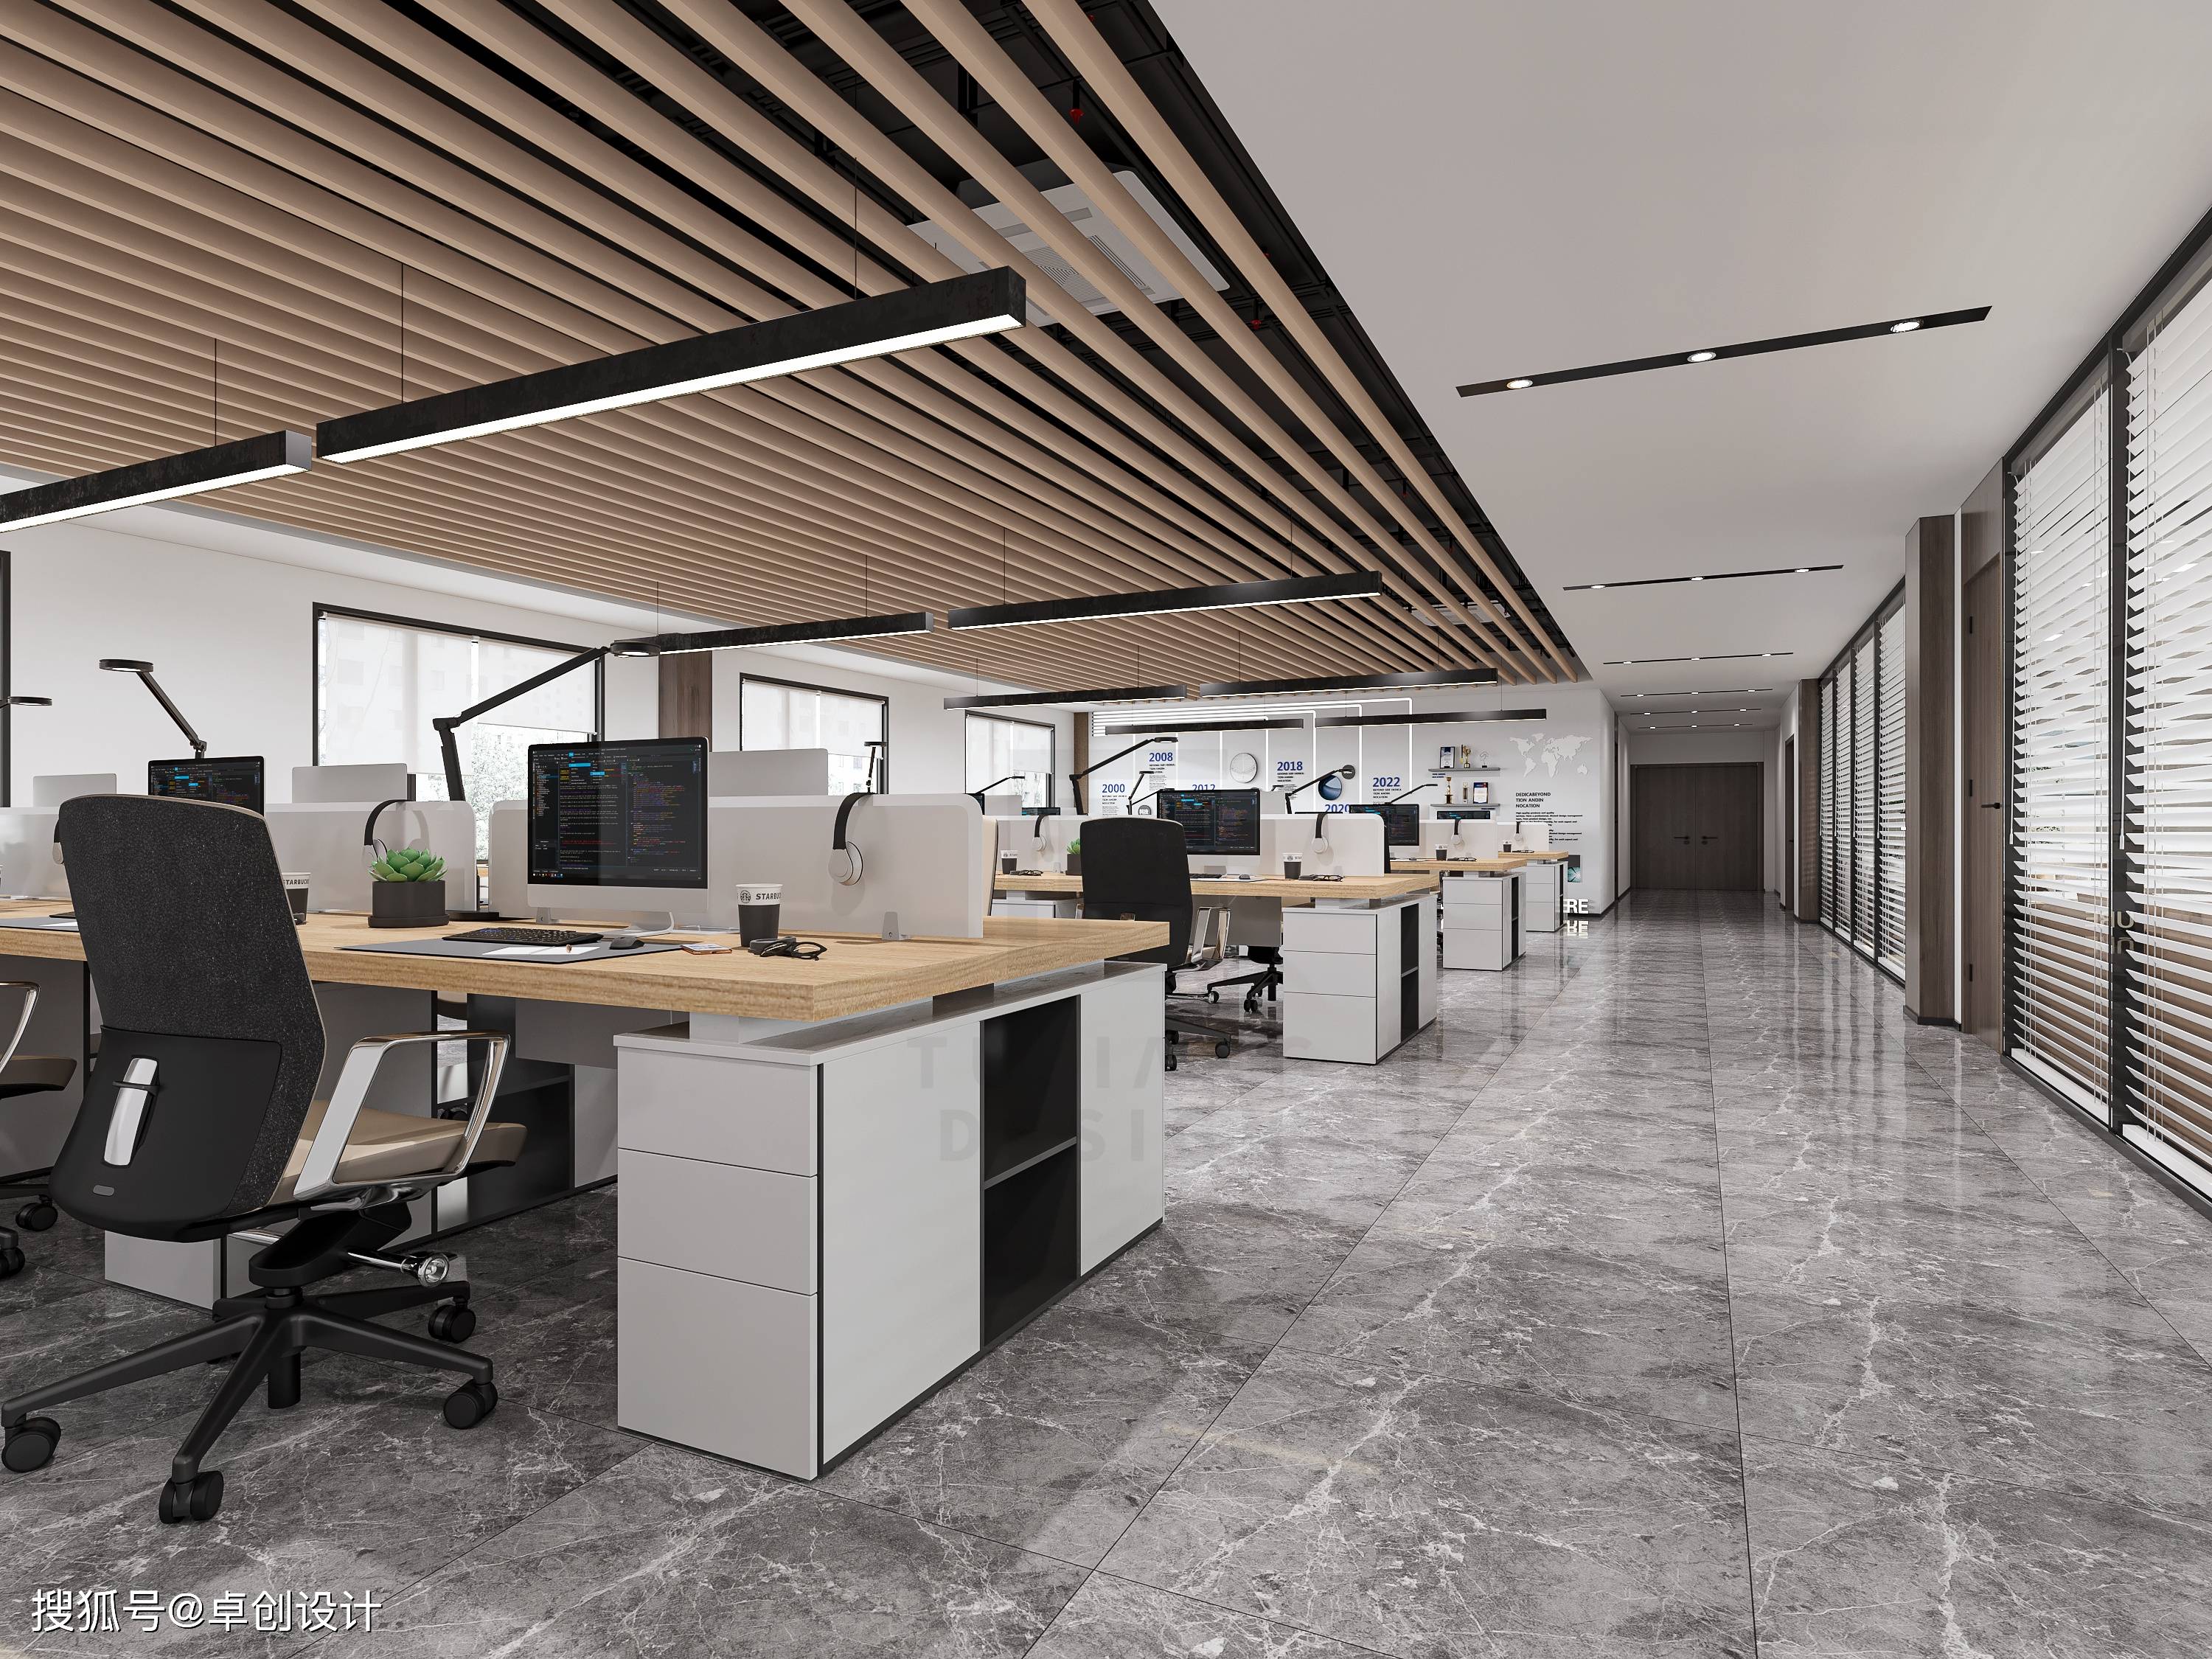 石膏板质是办公室装修常用的吊顶材料之一,因为可塑造造型,简洁大方